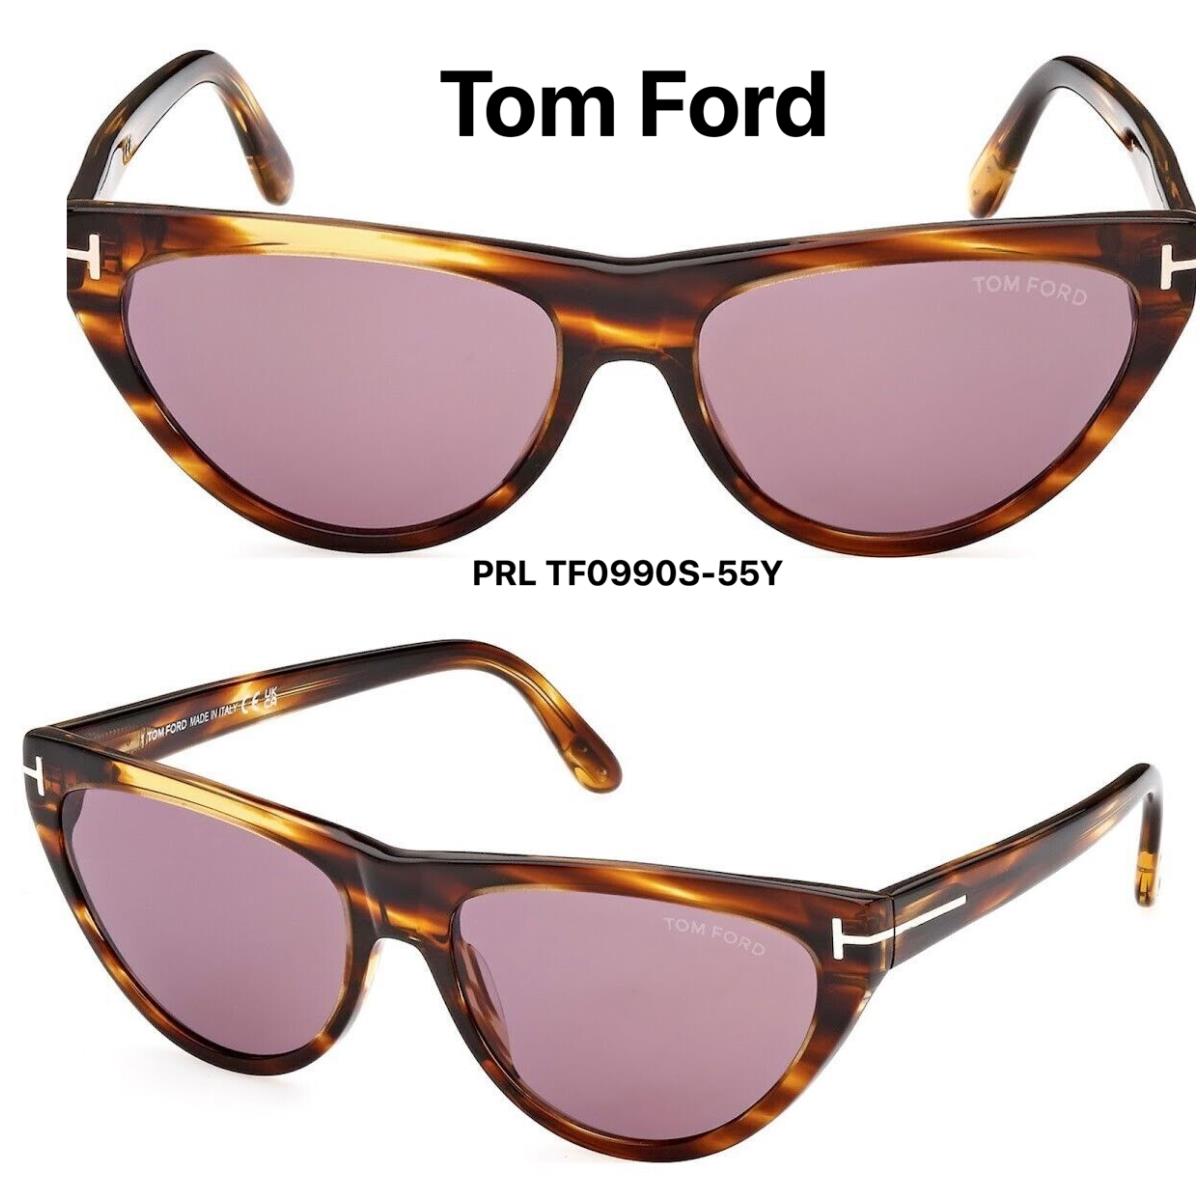 Tom Ford TF 990 55Y Amber-02 Women`s Sunglasses Havana Violet FT 990 55Y - Frame: Havana, Lens: Violet